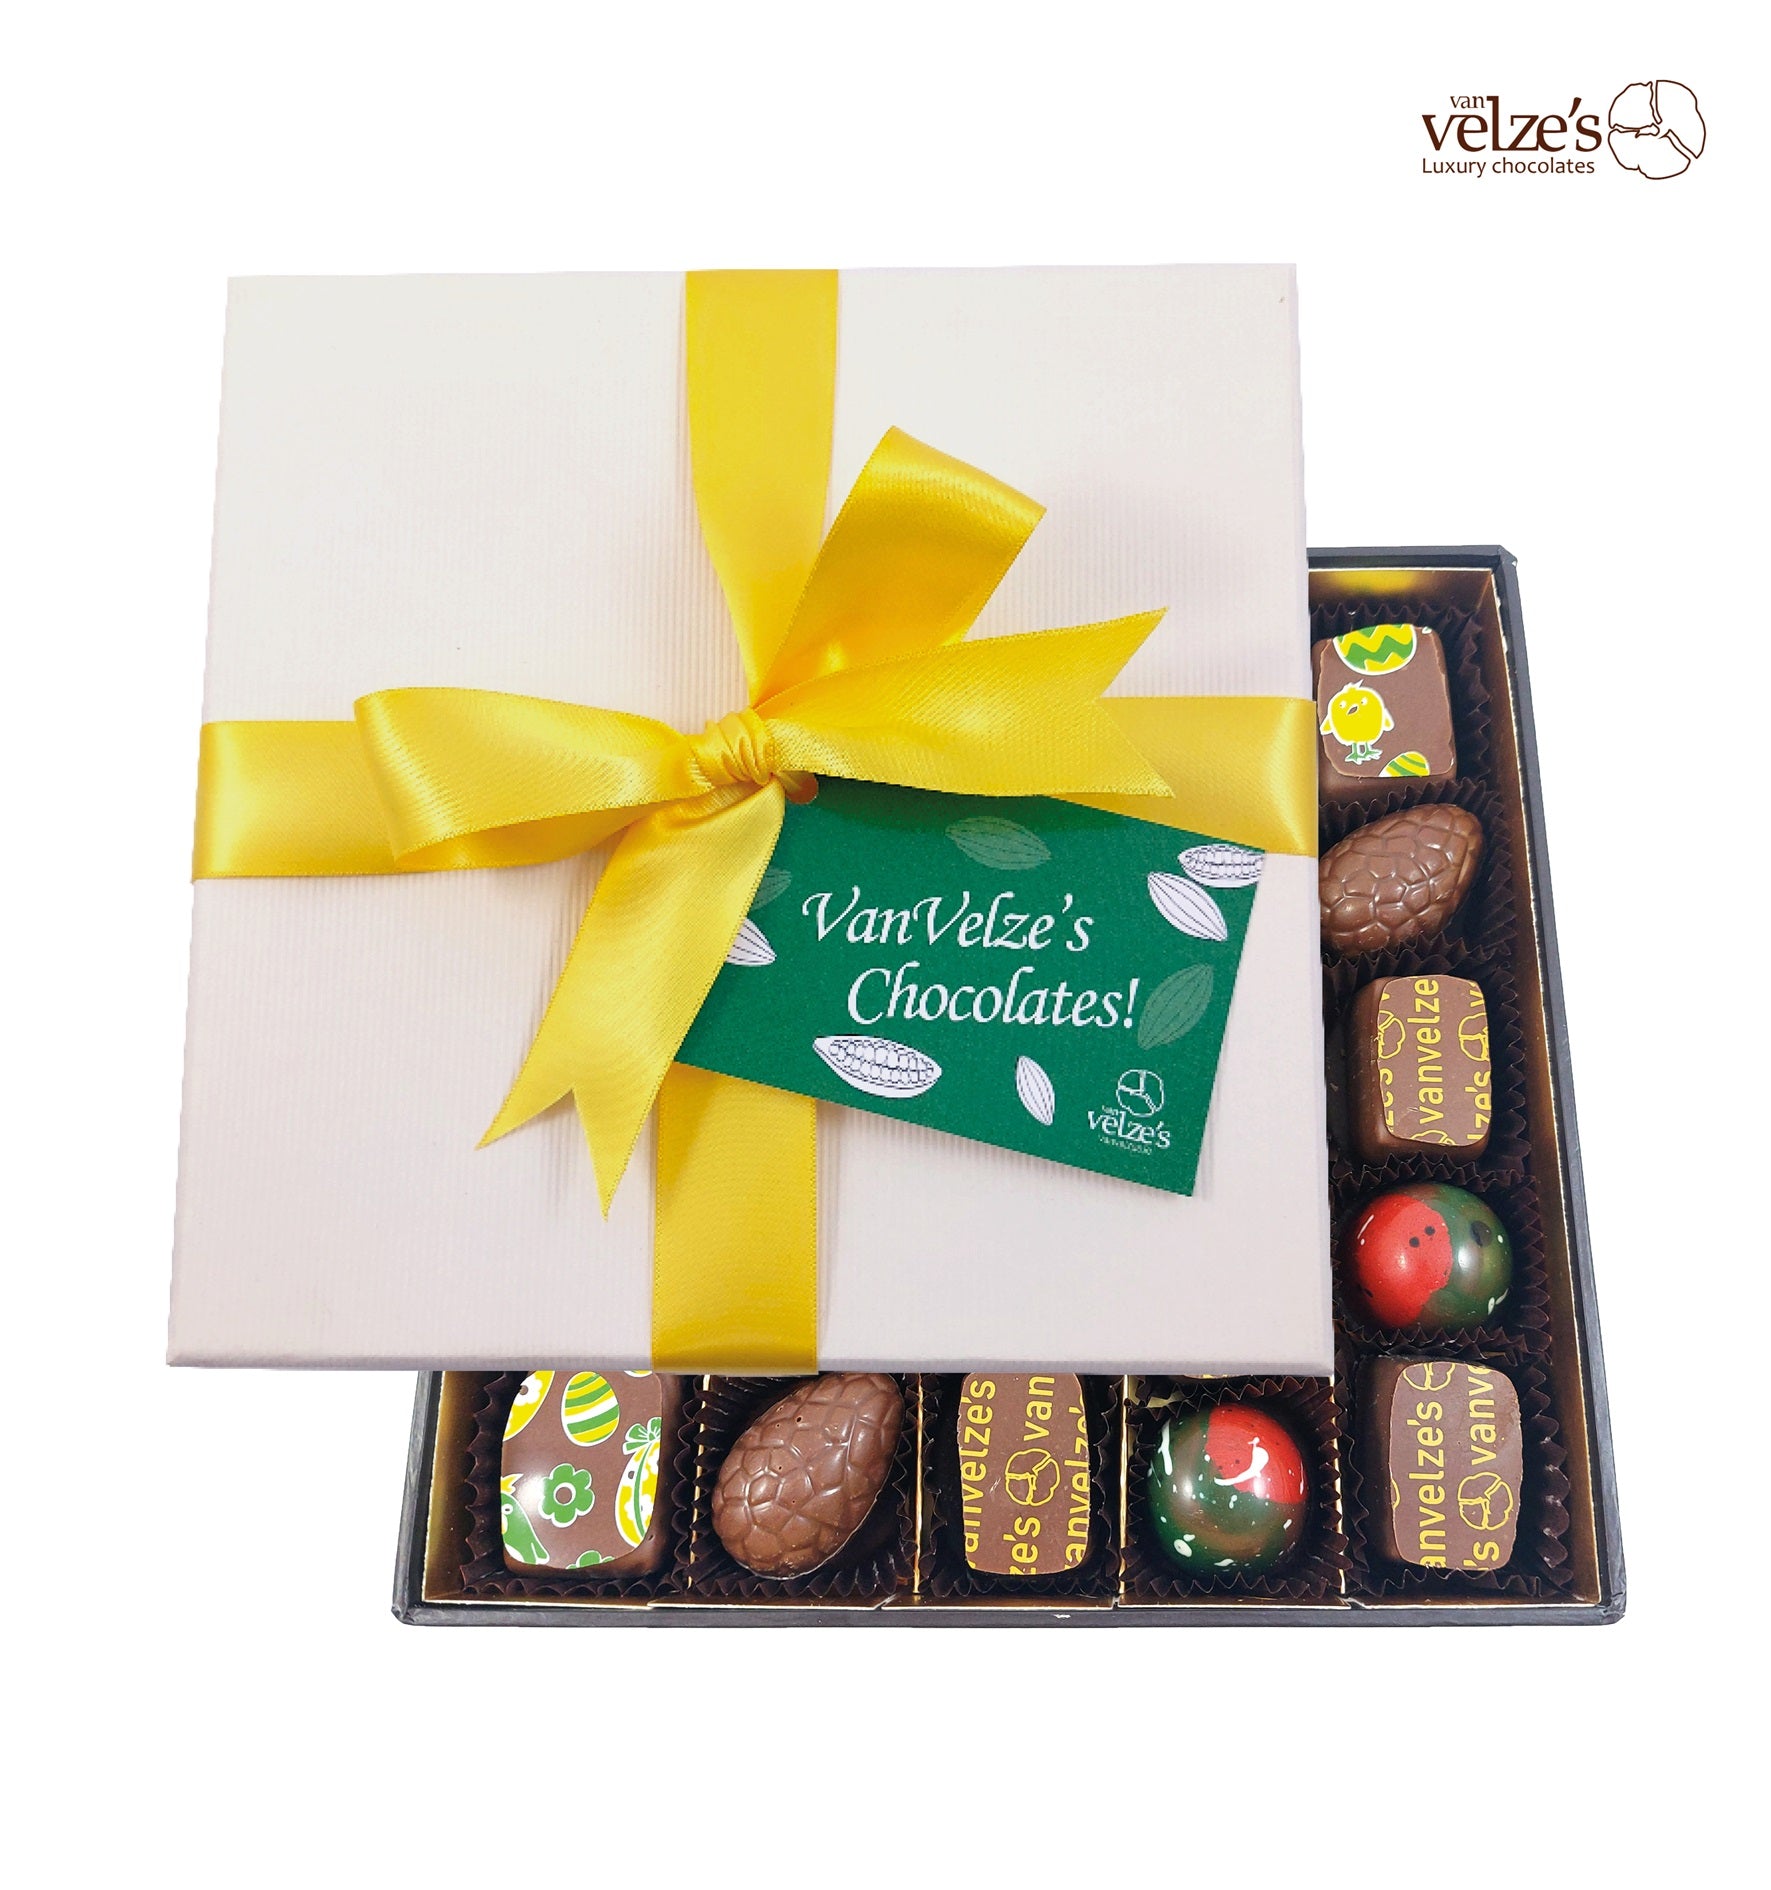 Luxury chocolate gifts, County Mayo Ireland, Artisan chocolates from the west of Ireland. County Mayo, Chocolates, Easter chocolates